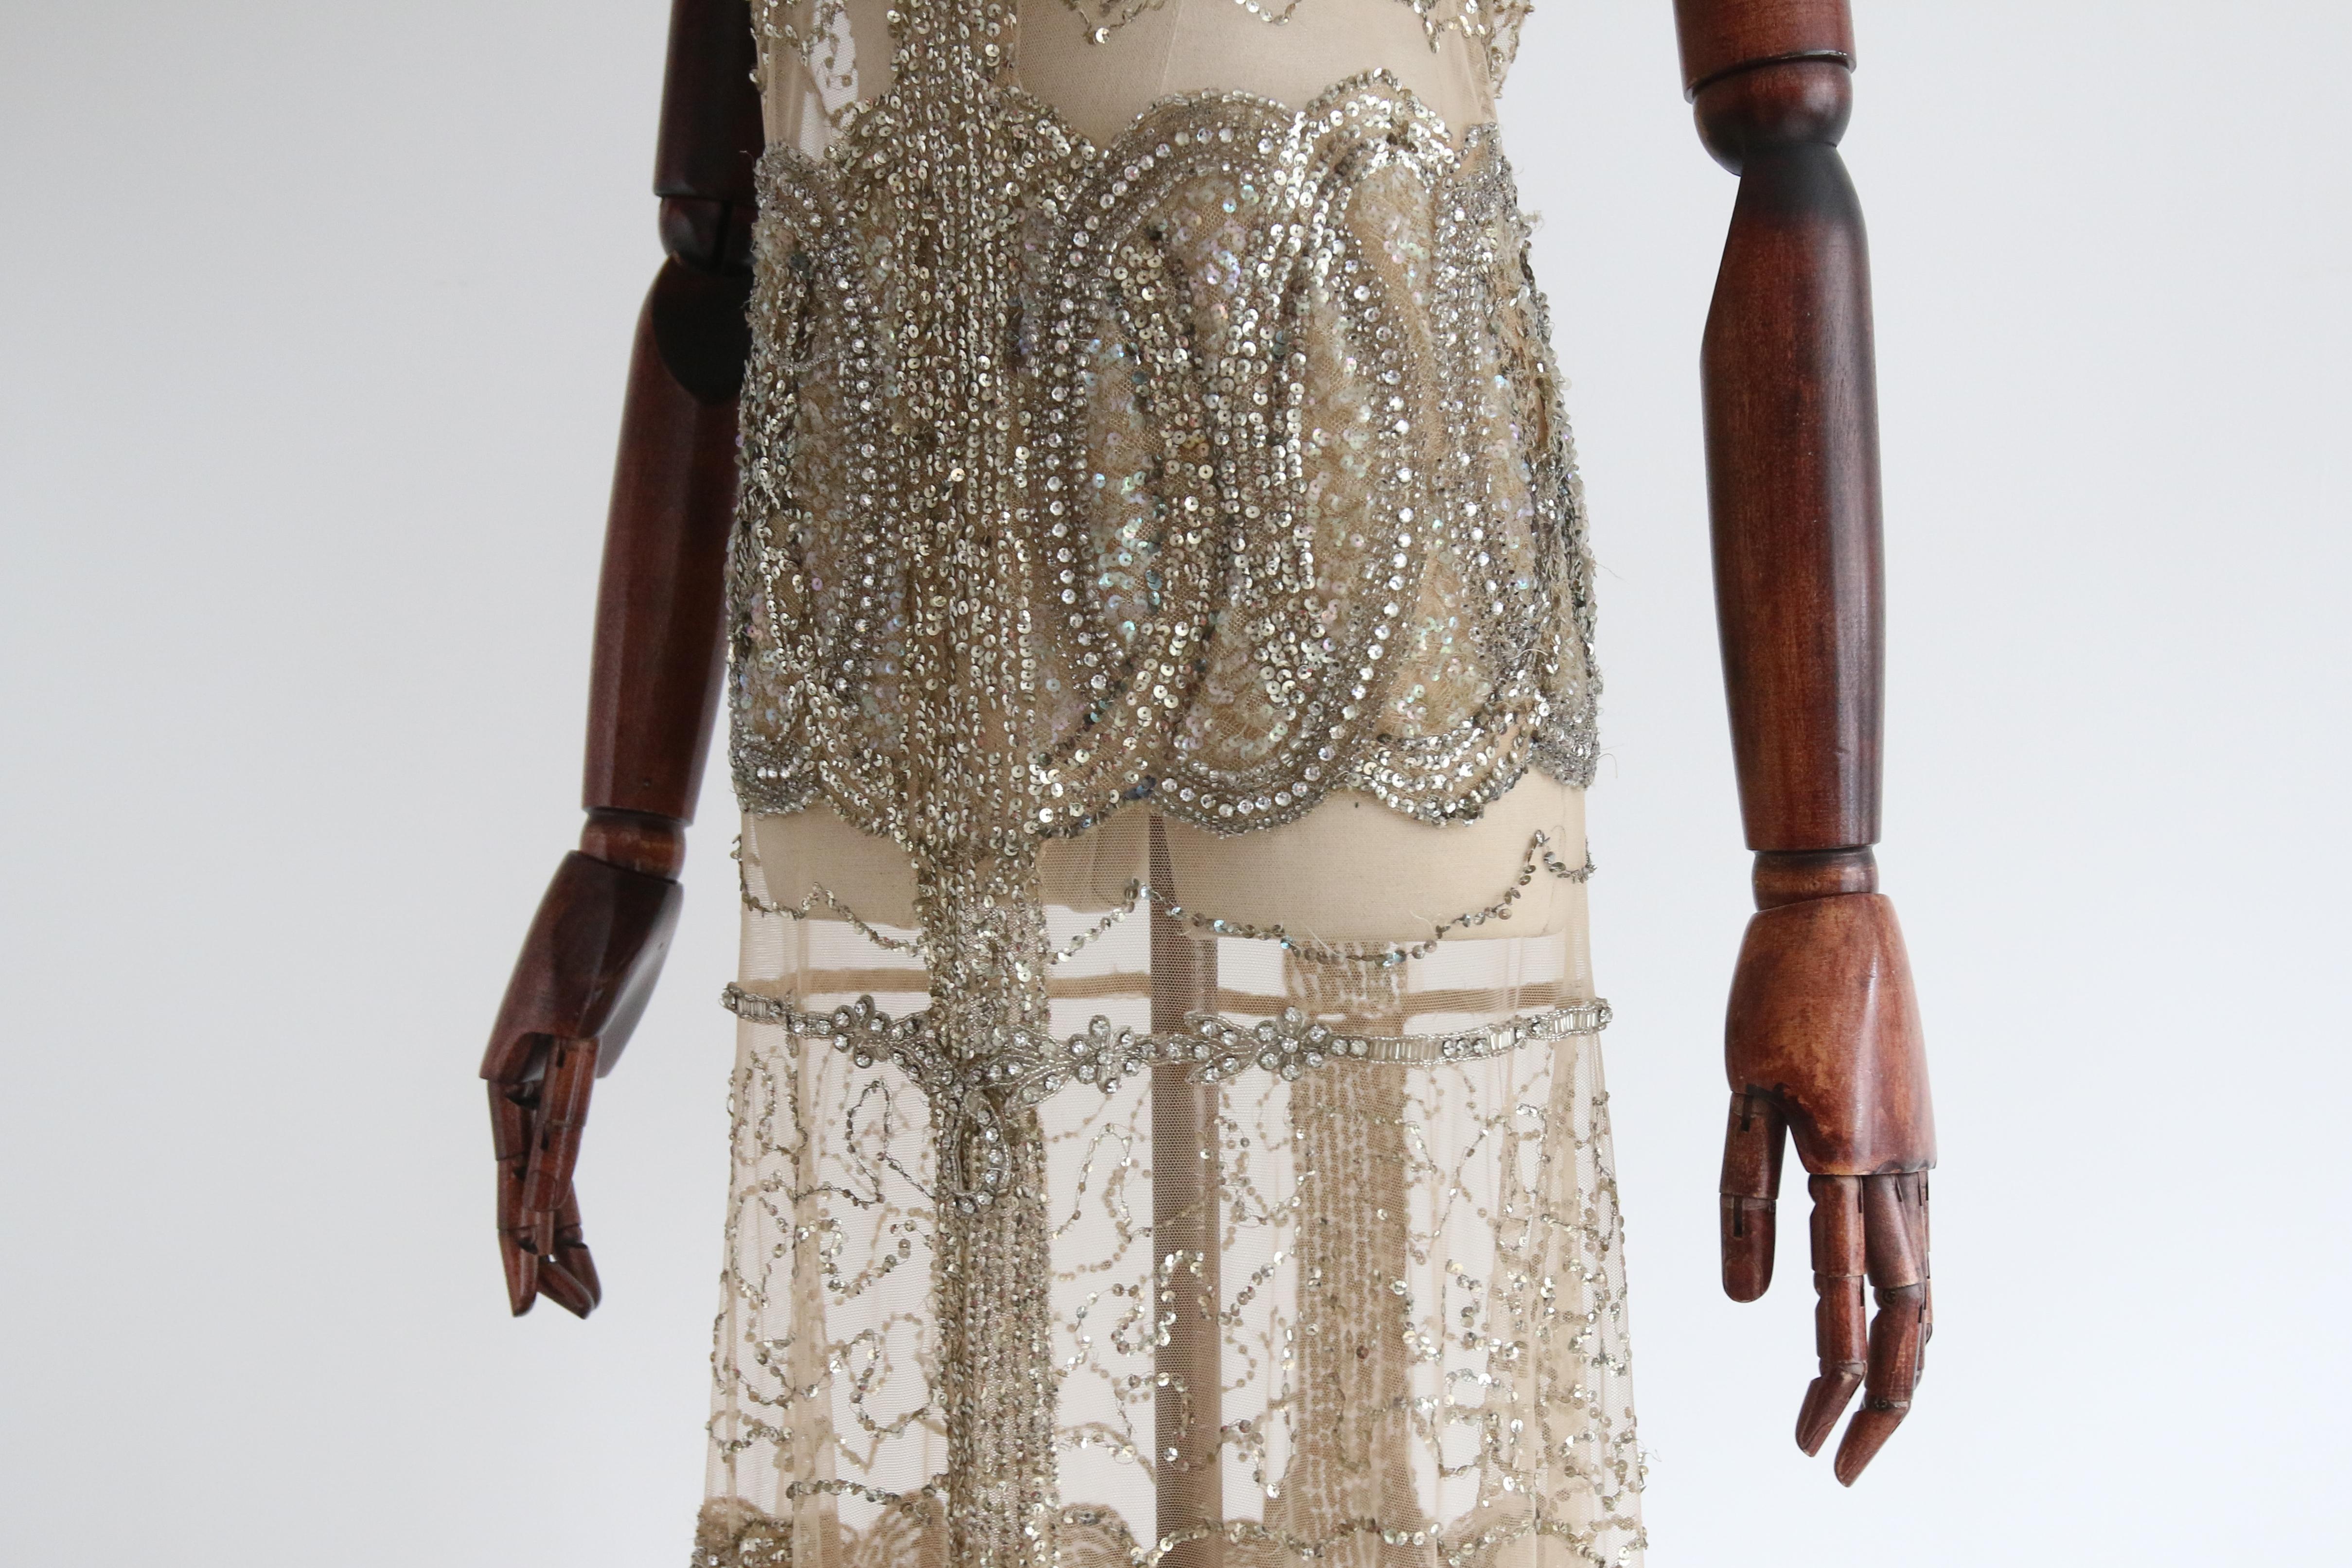 Vintage 1920's Gold Beaded Sequin Dress Flapper Dress UK 6-8 US 2-4 For Sale 12